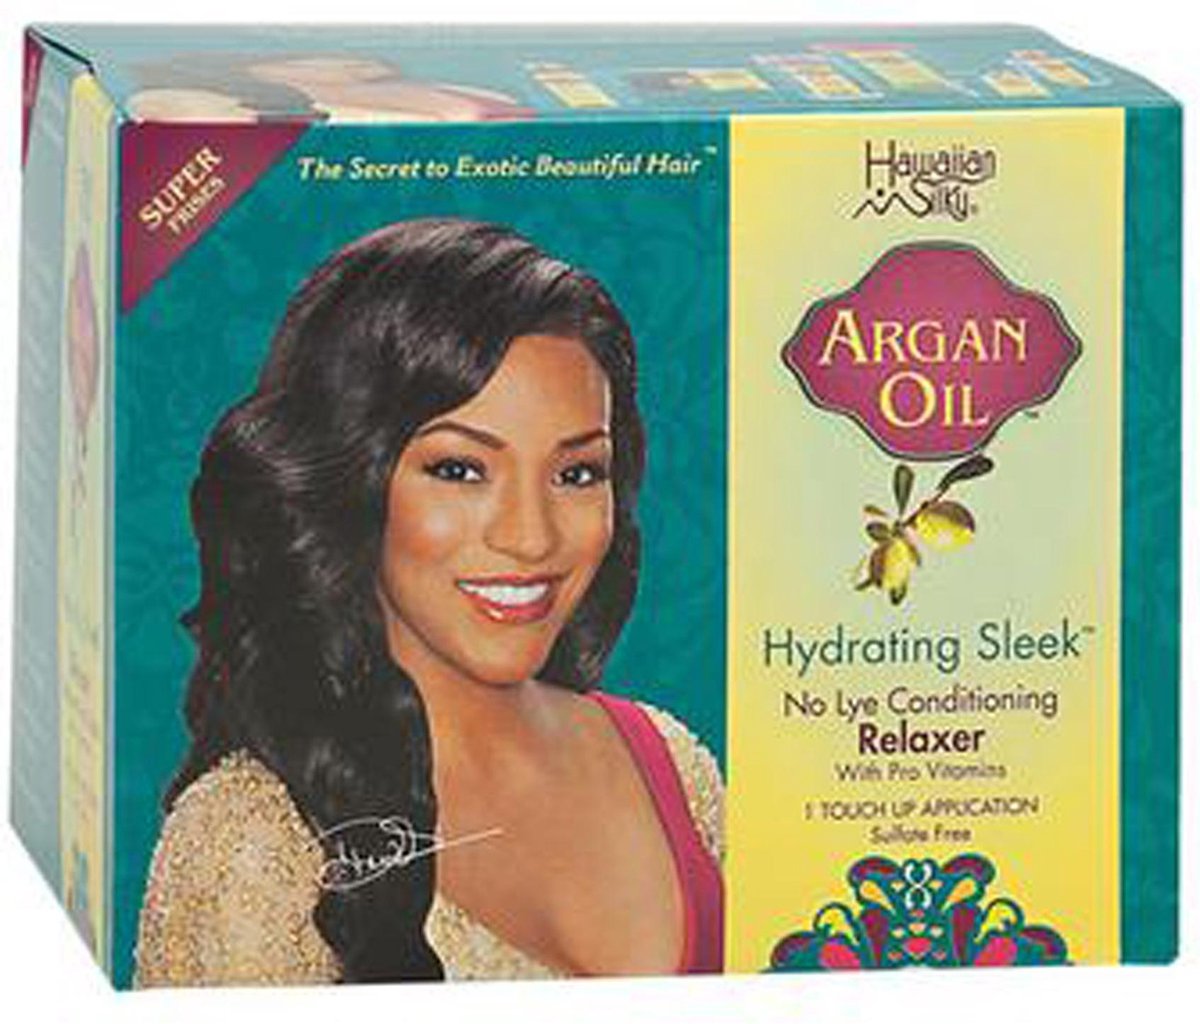 Hawaiian Silky Argan Oil Hydrating Sleek No Lye Relaxer